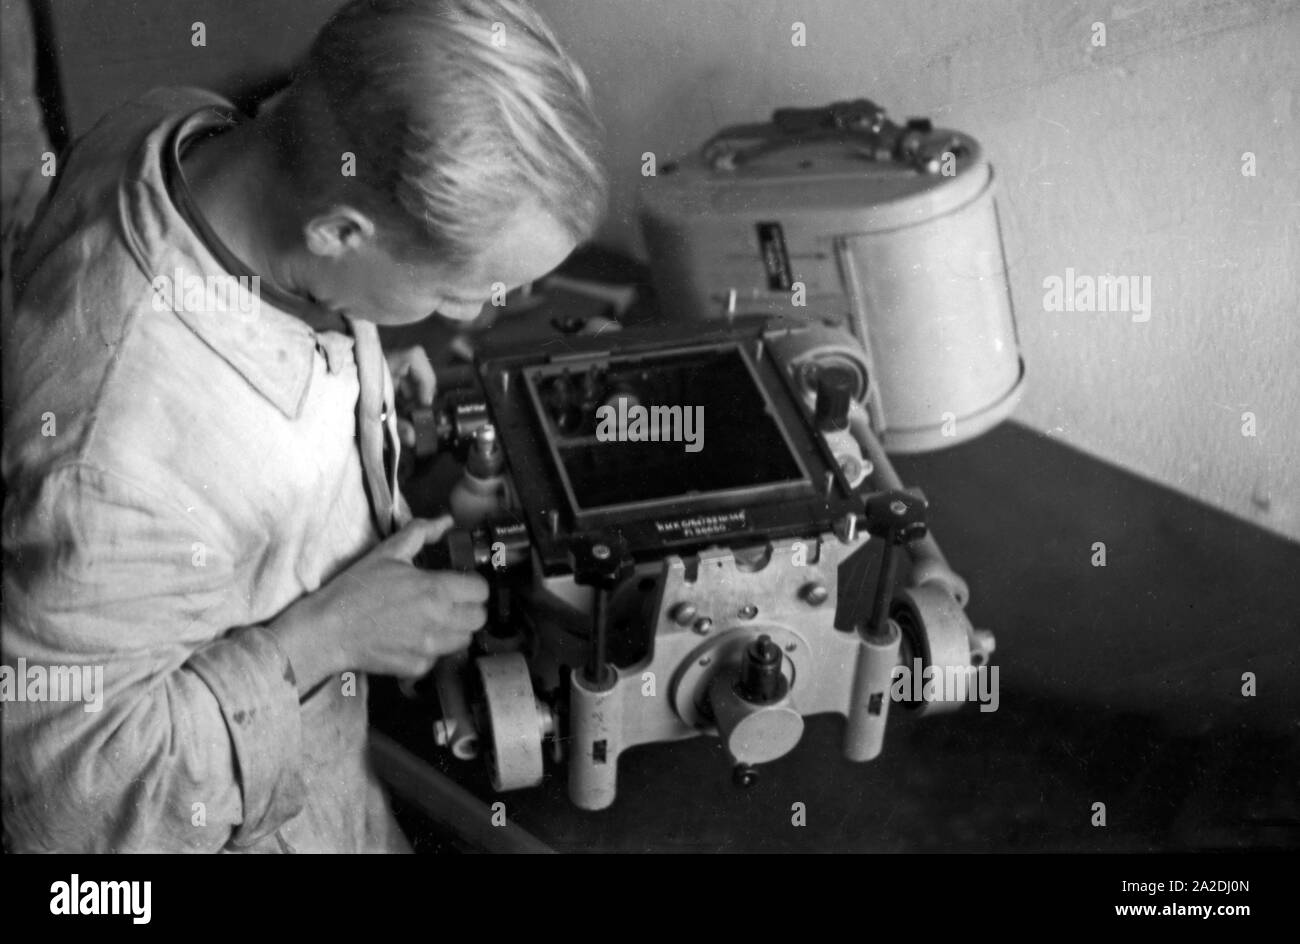 Rekrut der Flieger Ausbildungsstelle Schönwalde beim Einrichten einer Luftbildkamera, Deutschland 1930er Jahre. Recruit installing an air camera, Germany 1930s. Stock Photo